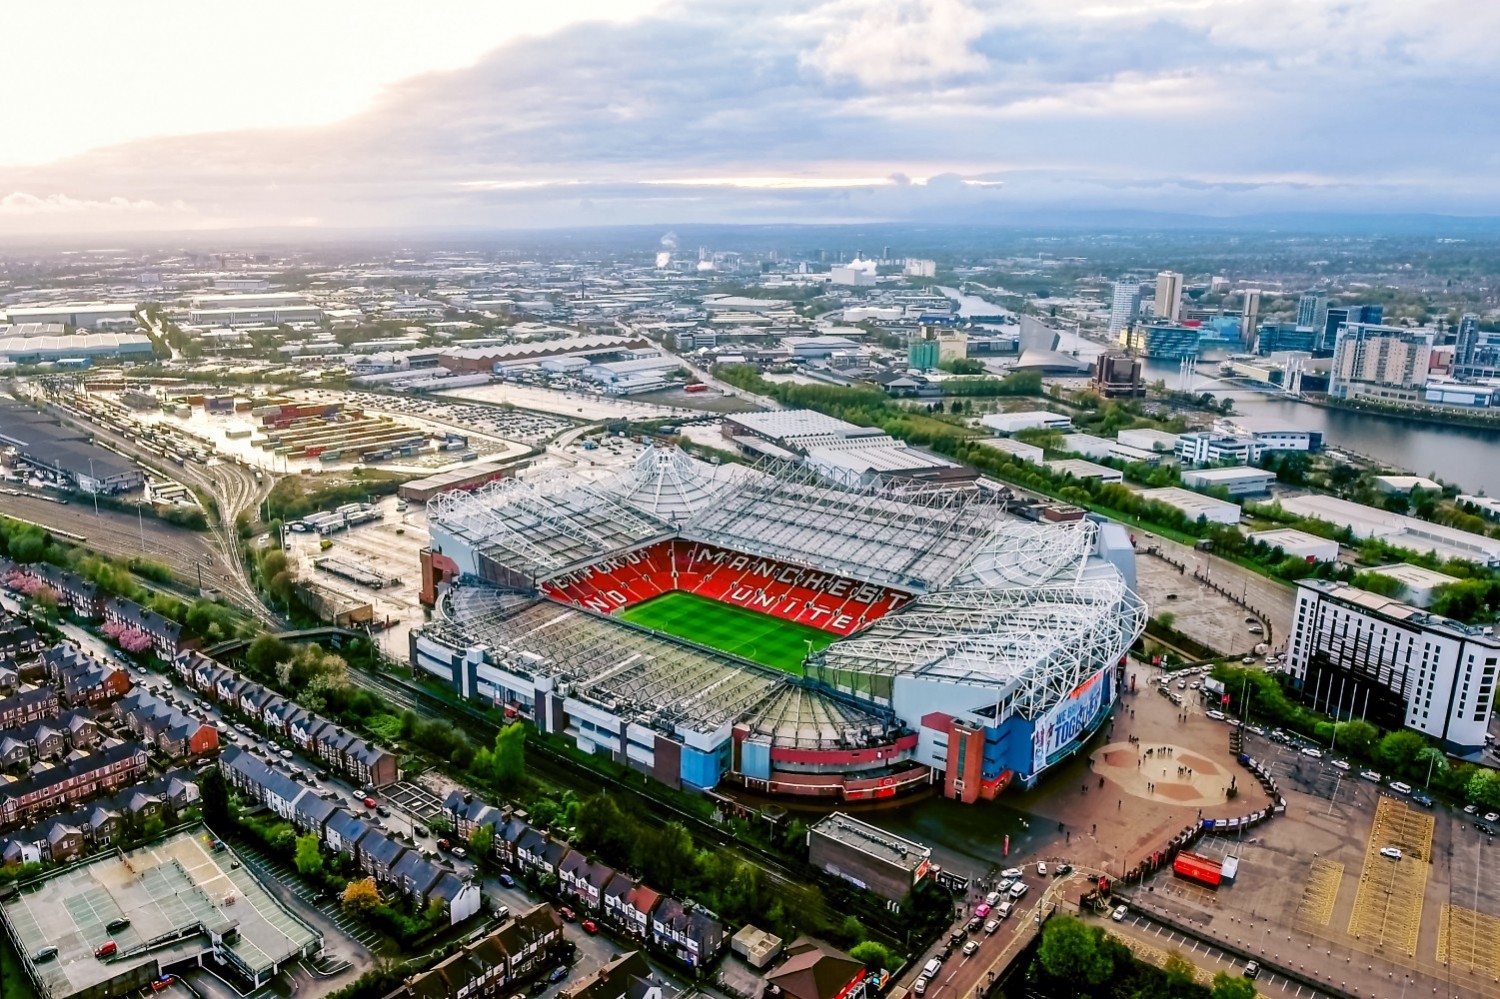 Manchester United przymierza się do modernizacji Old Trafford. Władze rozważają zburzenie legendarnego stadionu!